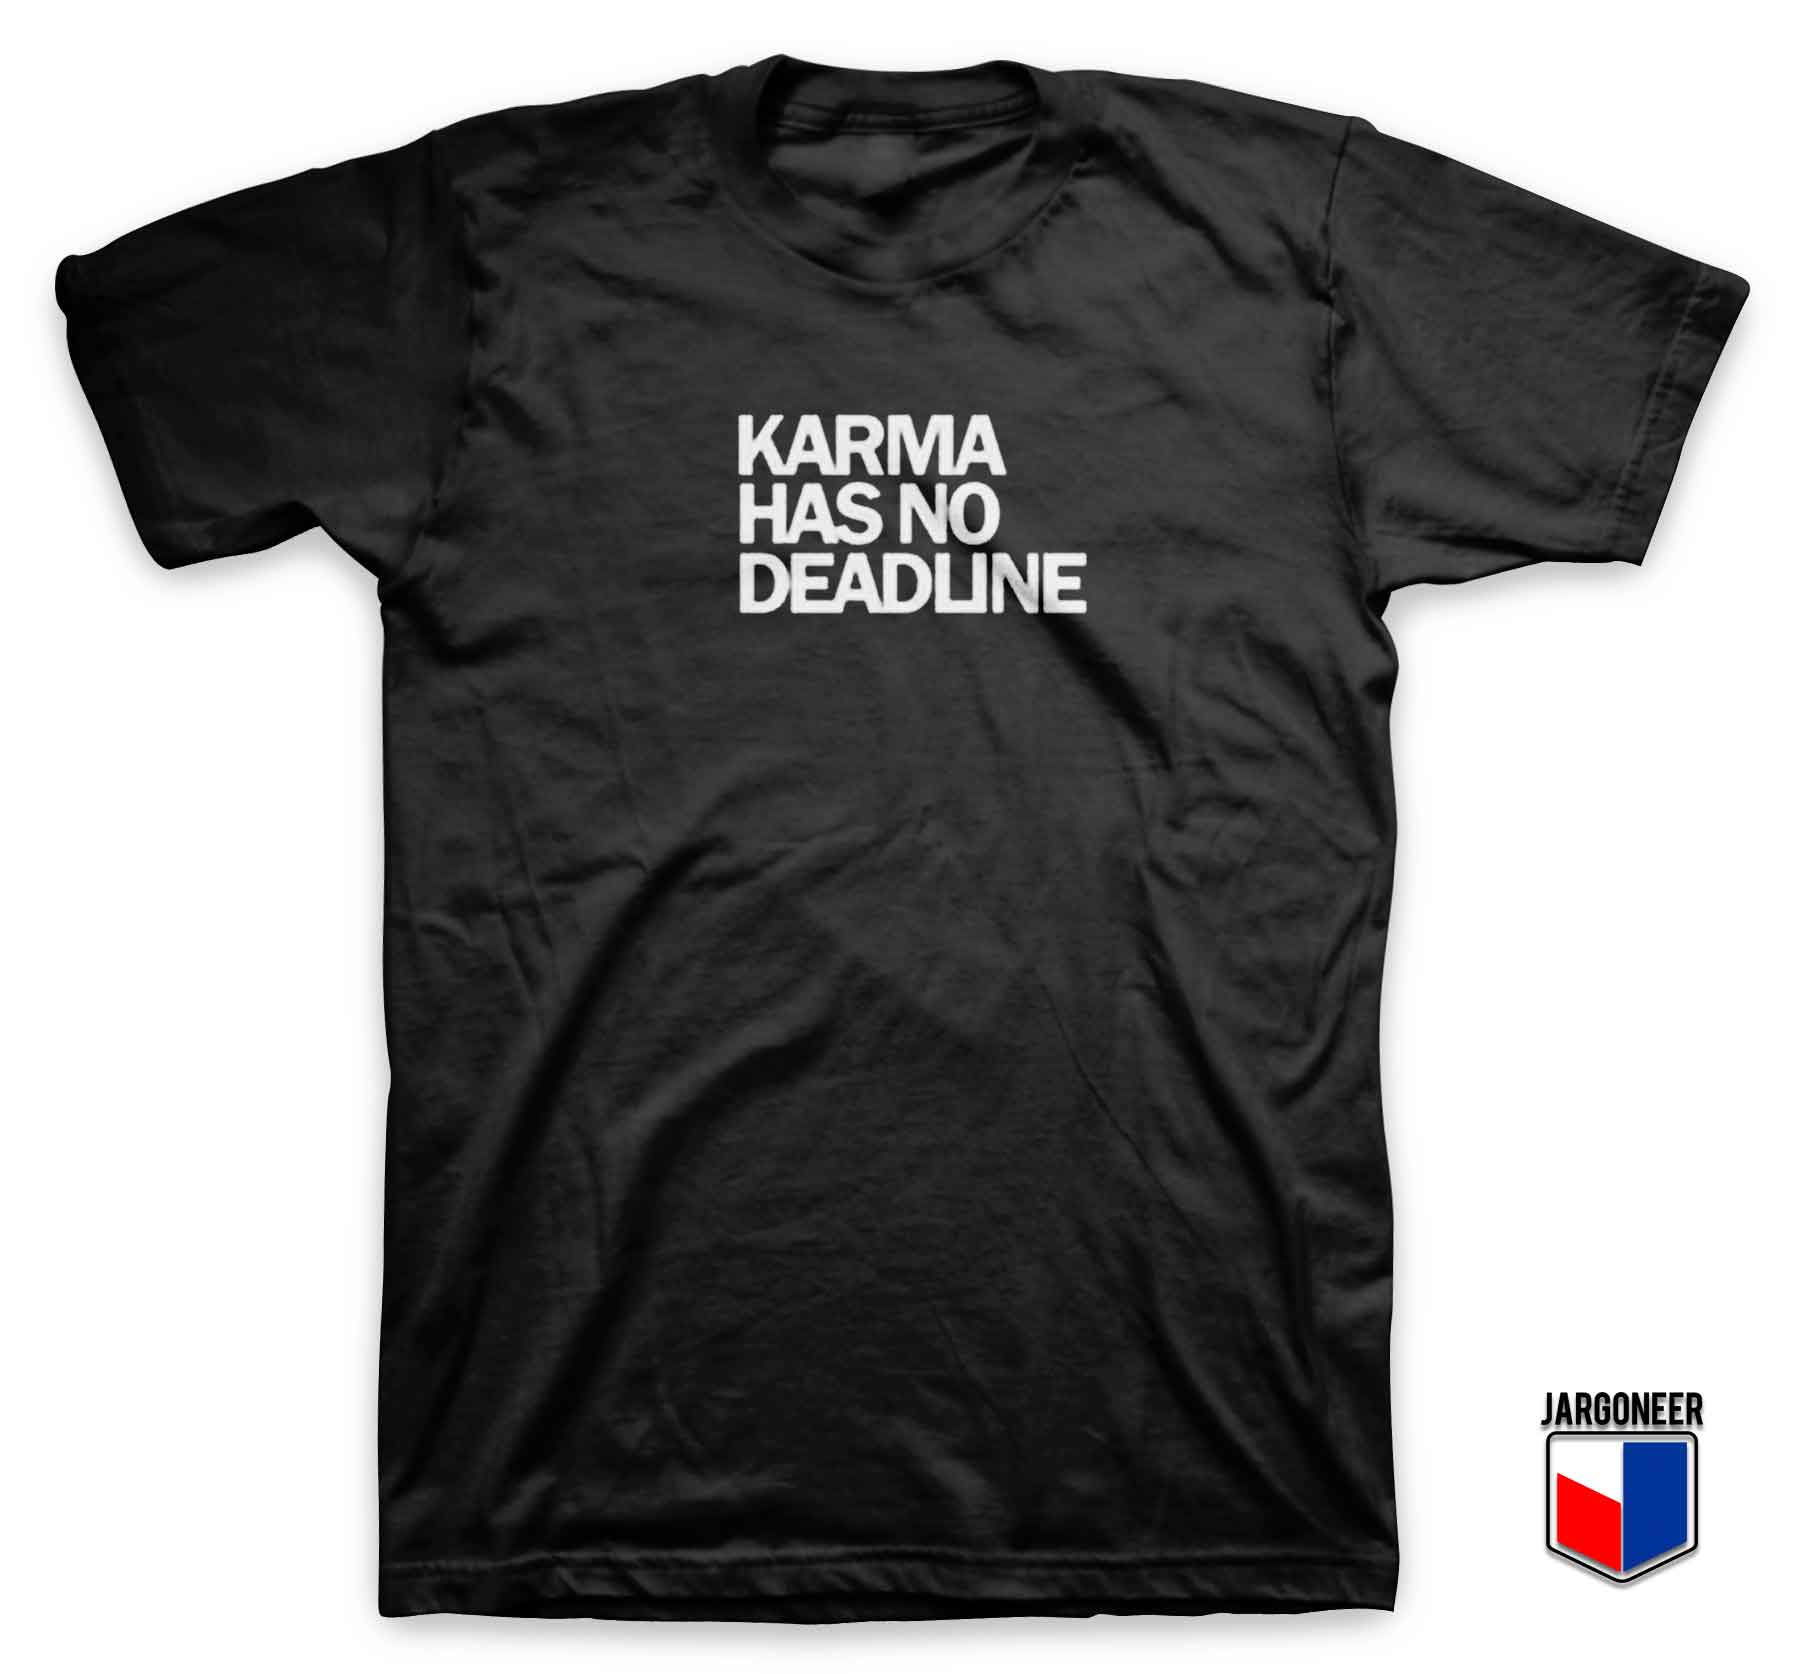 Karma Has No Deadline 3 - Shop Unique Graphic Cool Shirt Designs